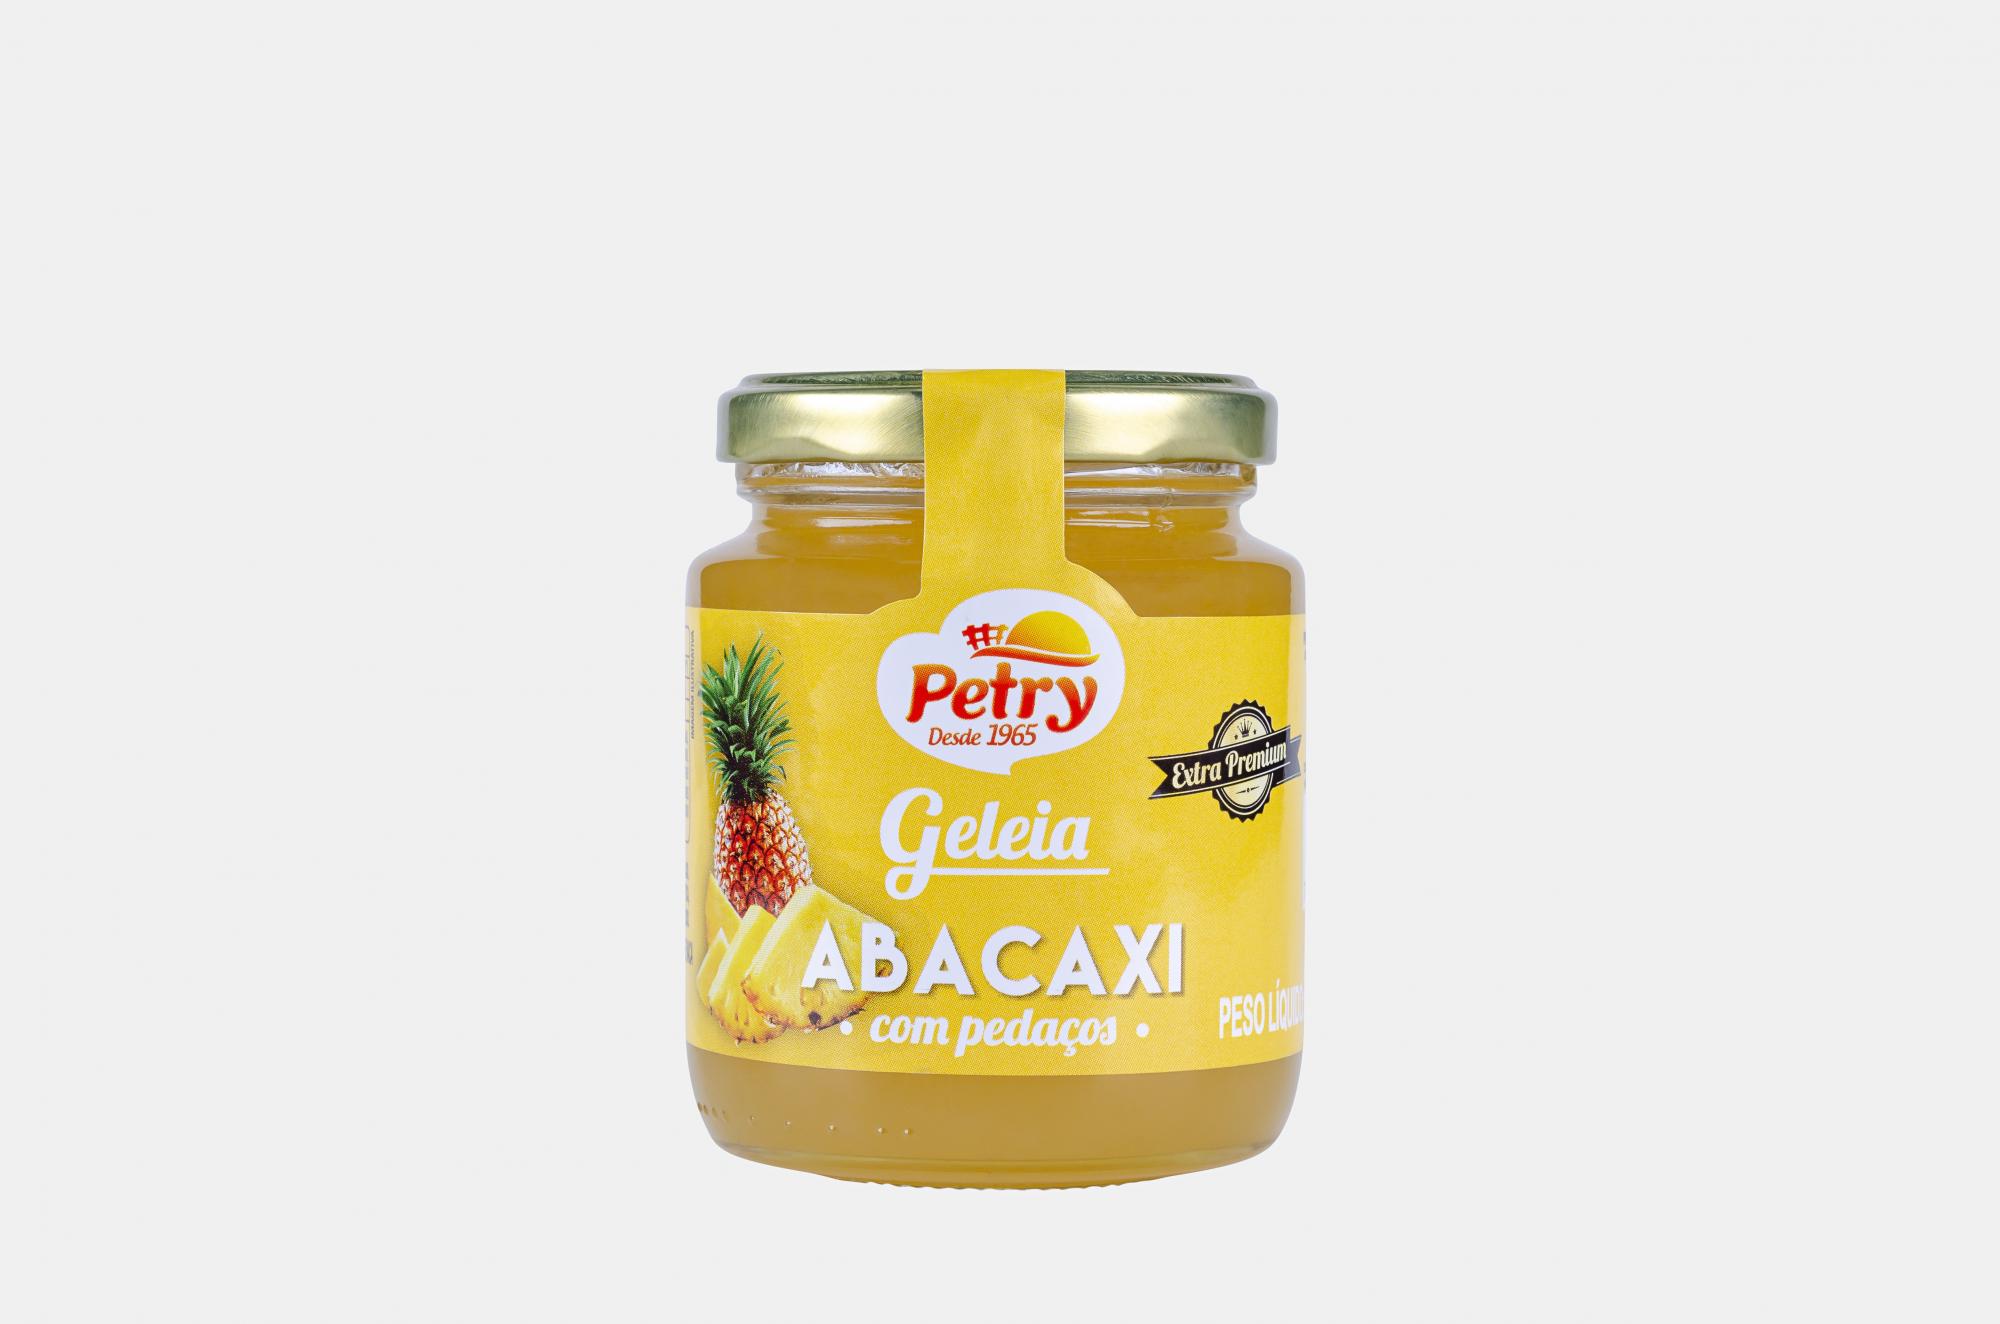 Geleia de abacaxi com pedaços Petry 265g